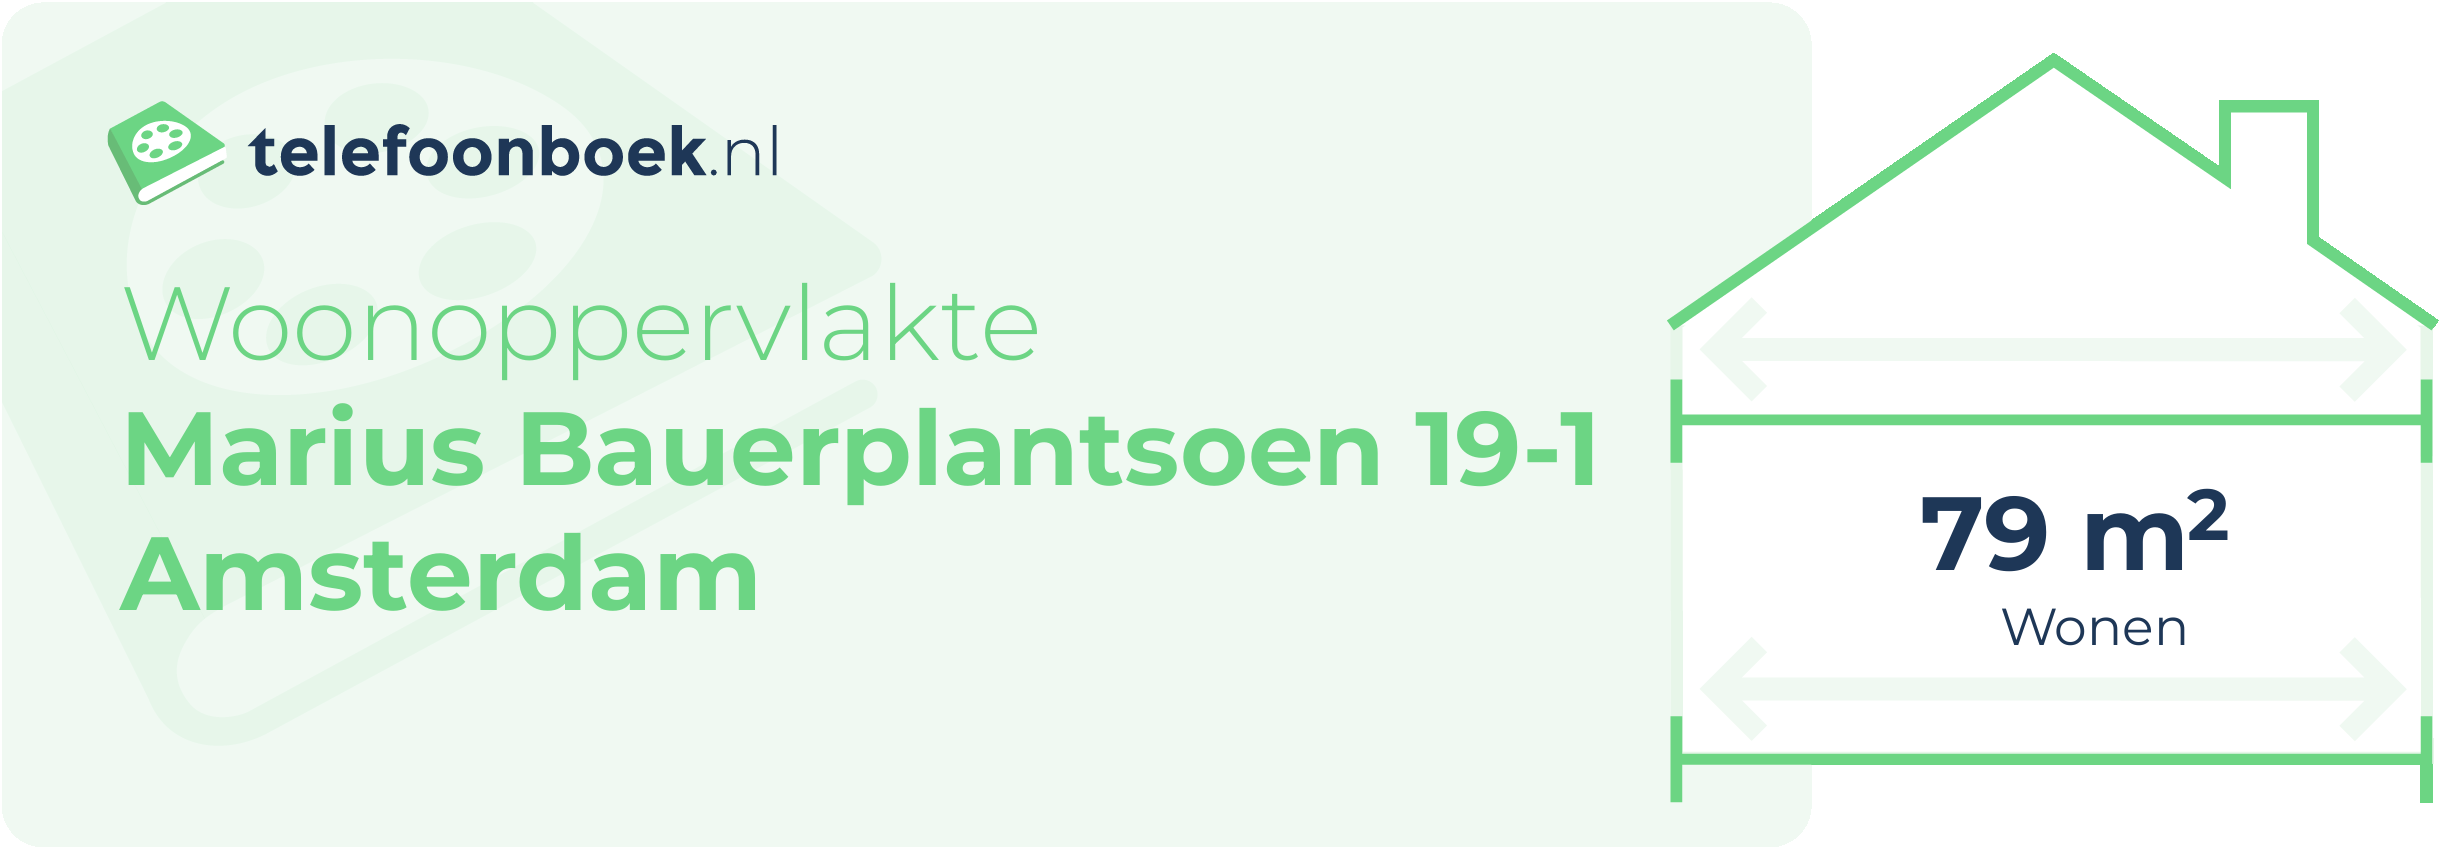 Woonoppervlakte Marius Bauerplantsoen 19-1 Amsterdam